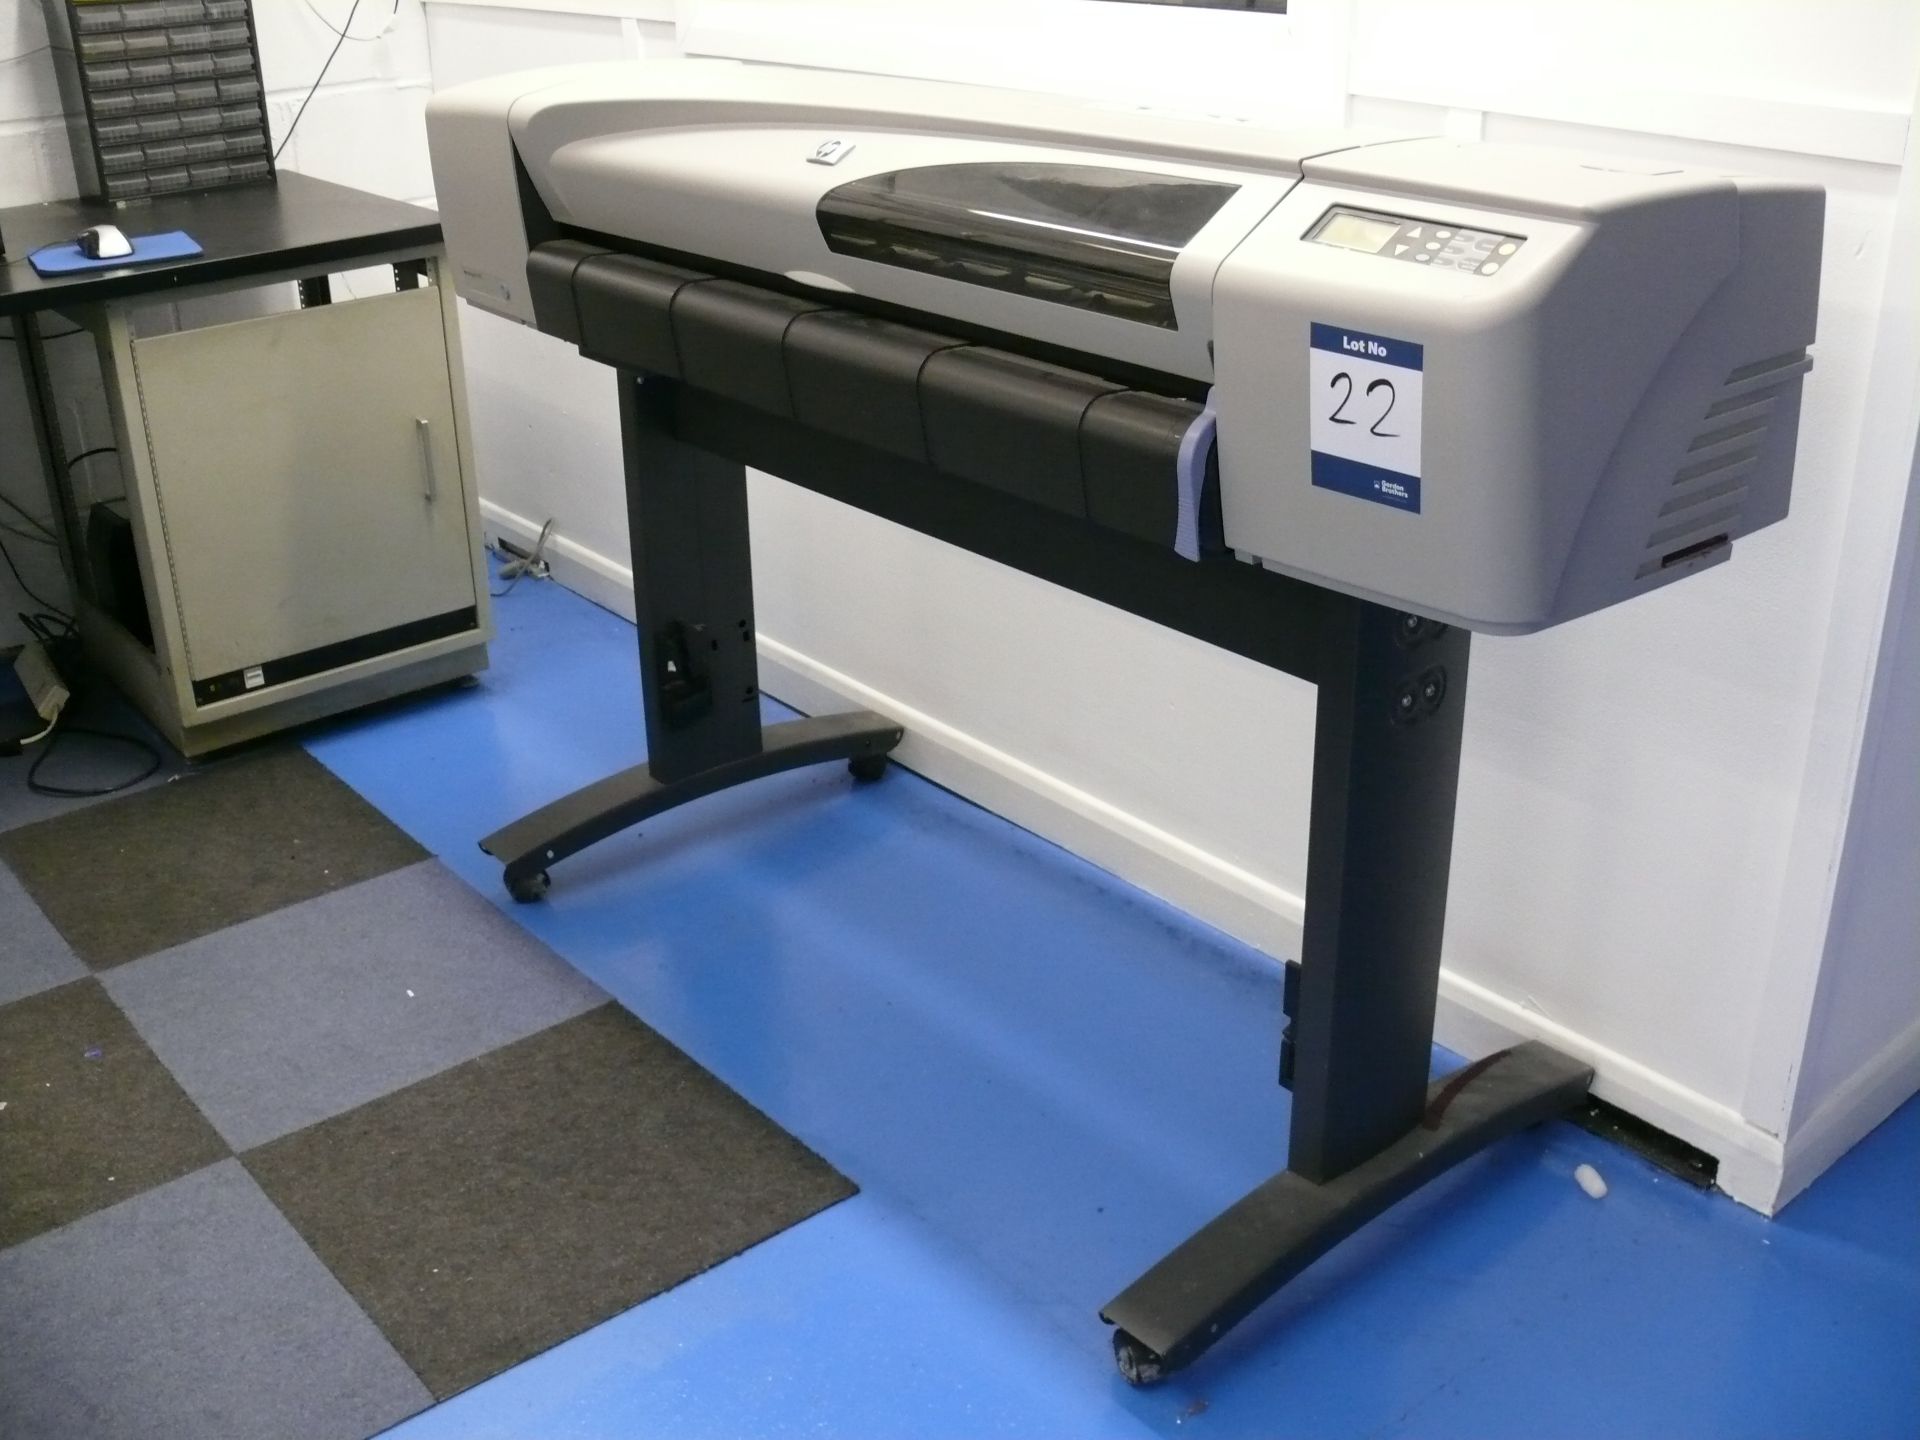 Hewlett Packard DesignJet500 plotter/printer